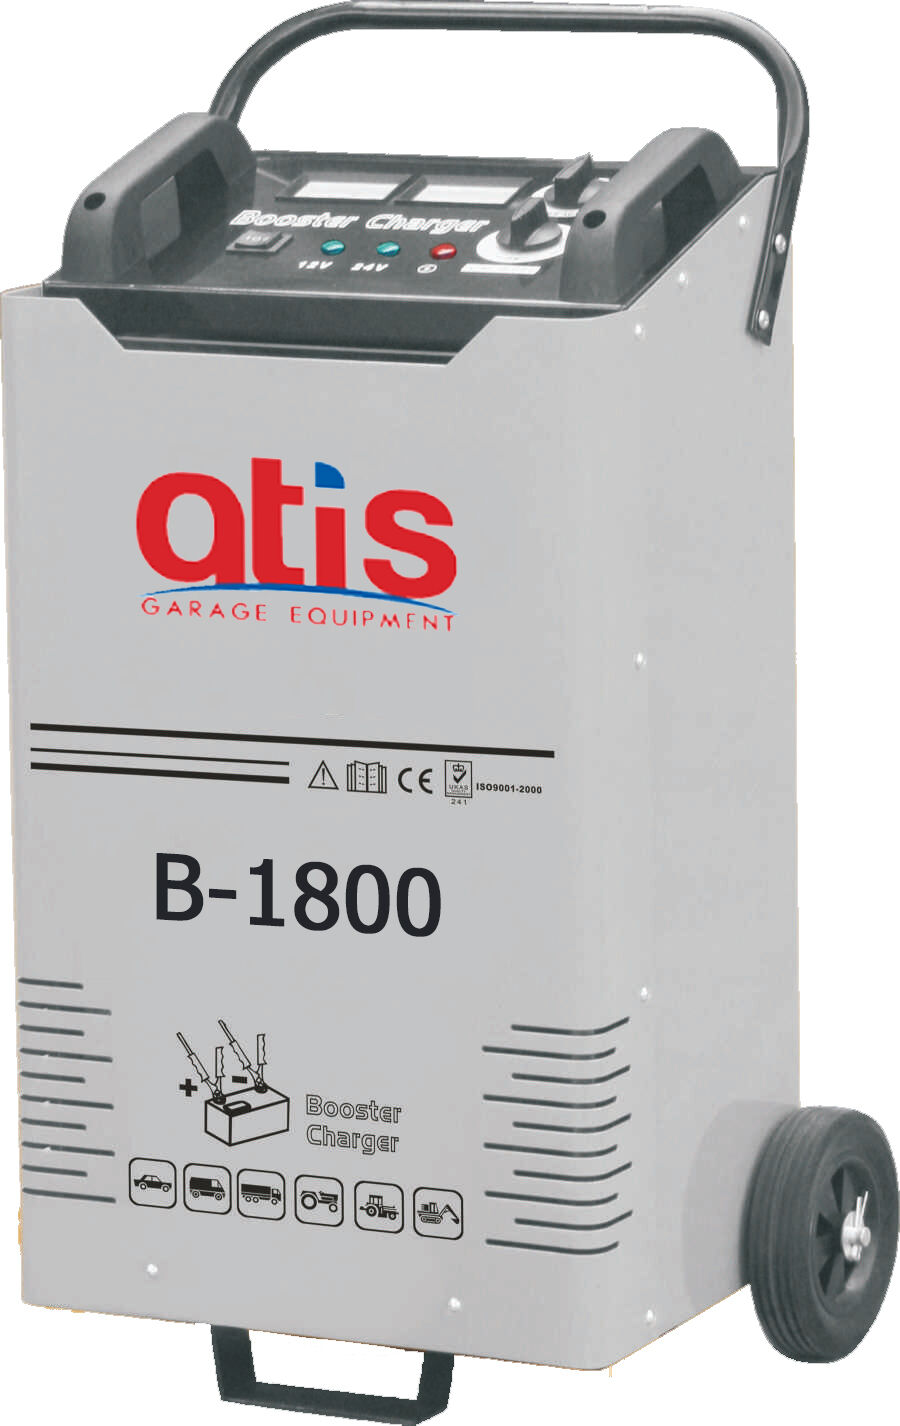 Автоматическое пуско-зарядное устройство B-1800 максимальный стартовый ток 1800А